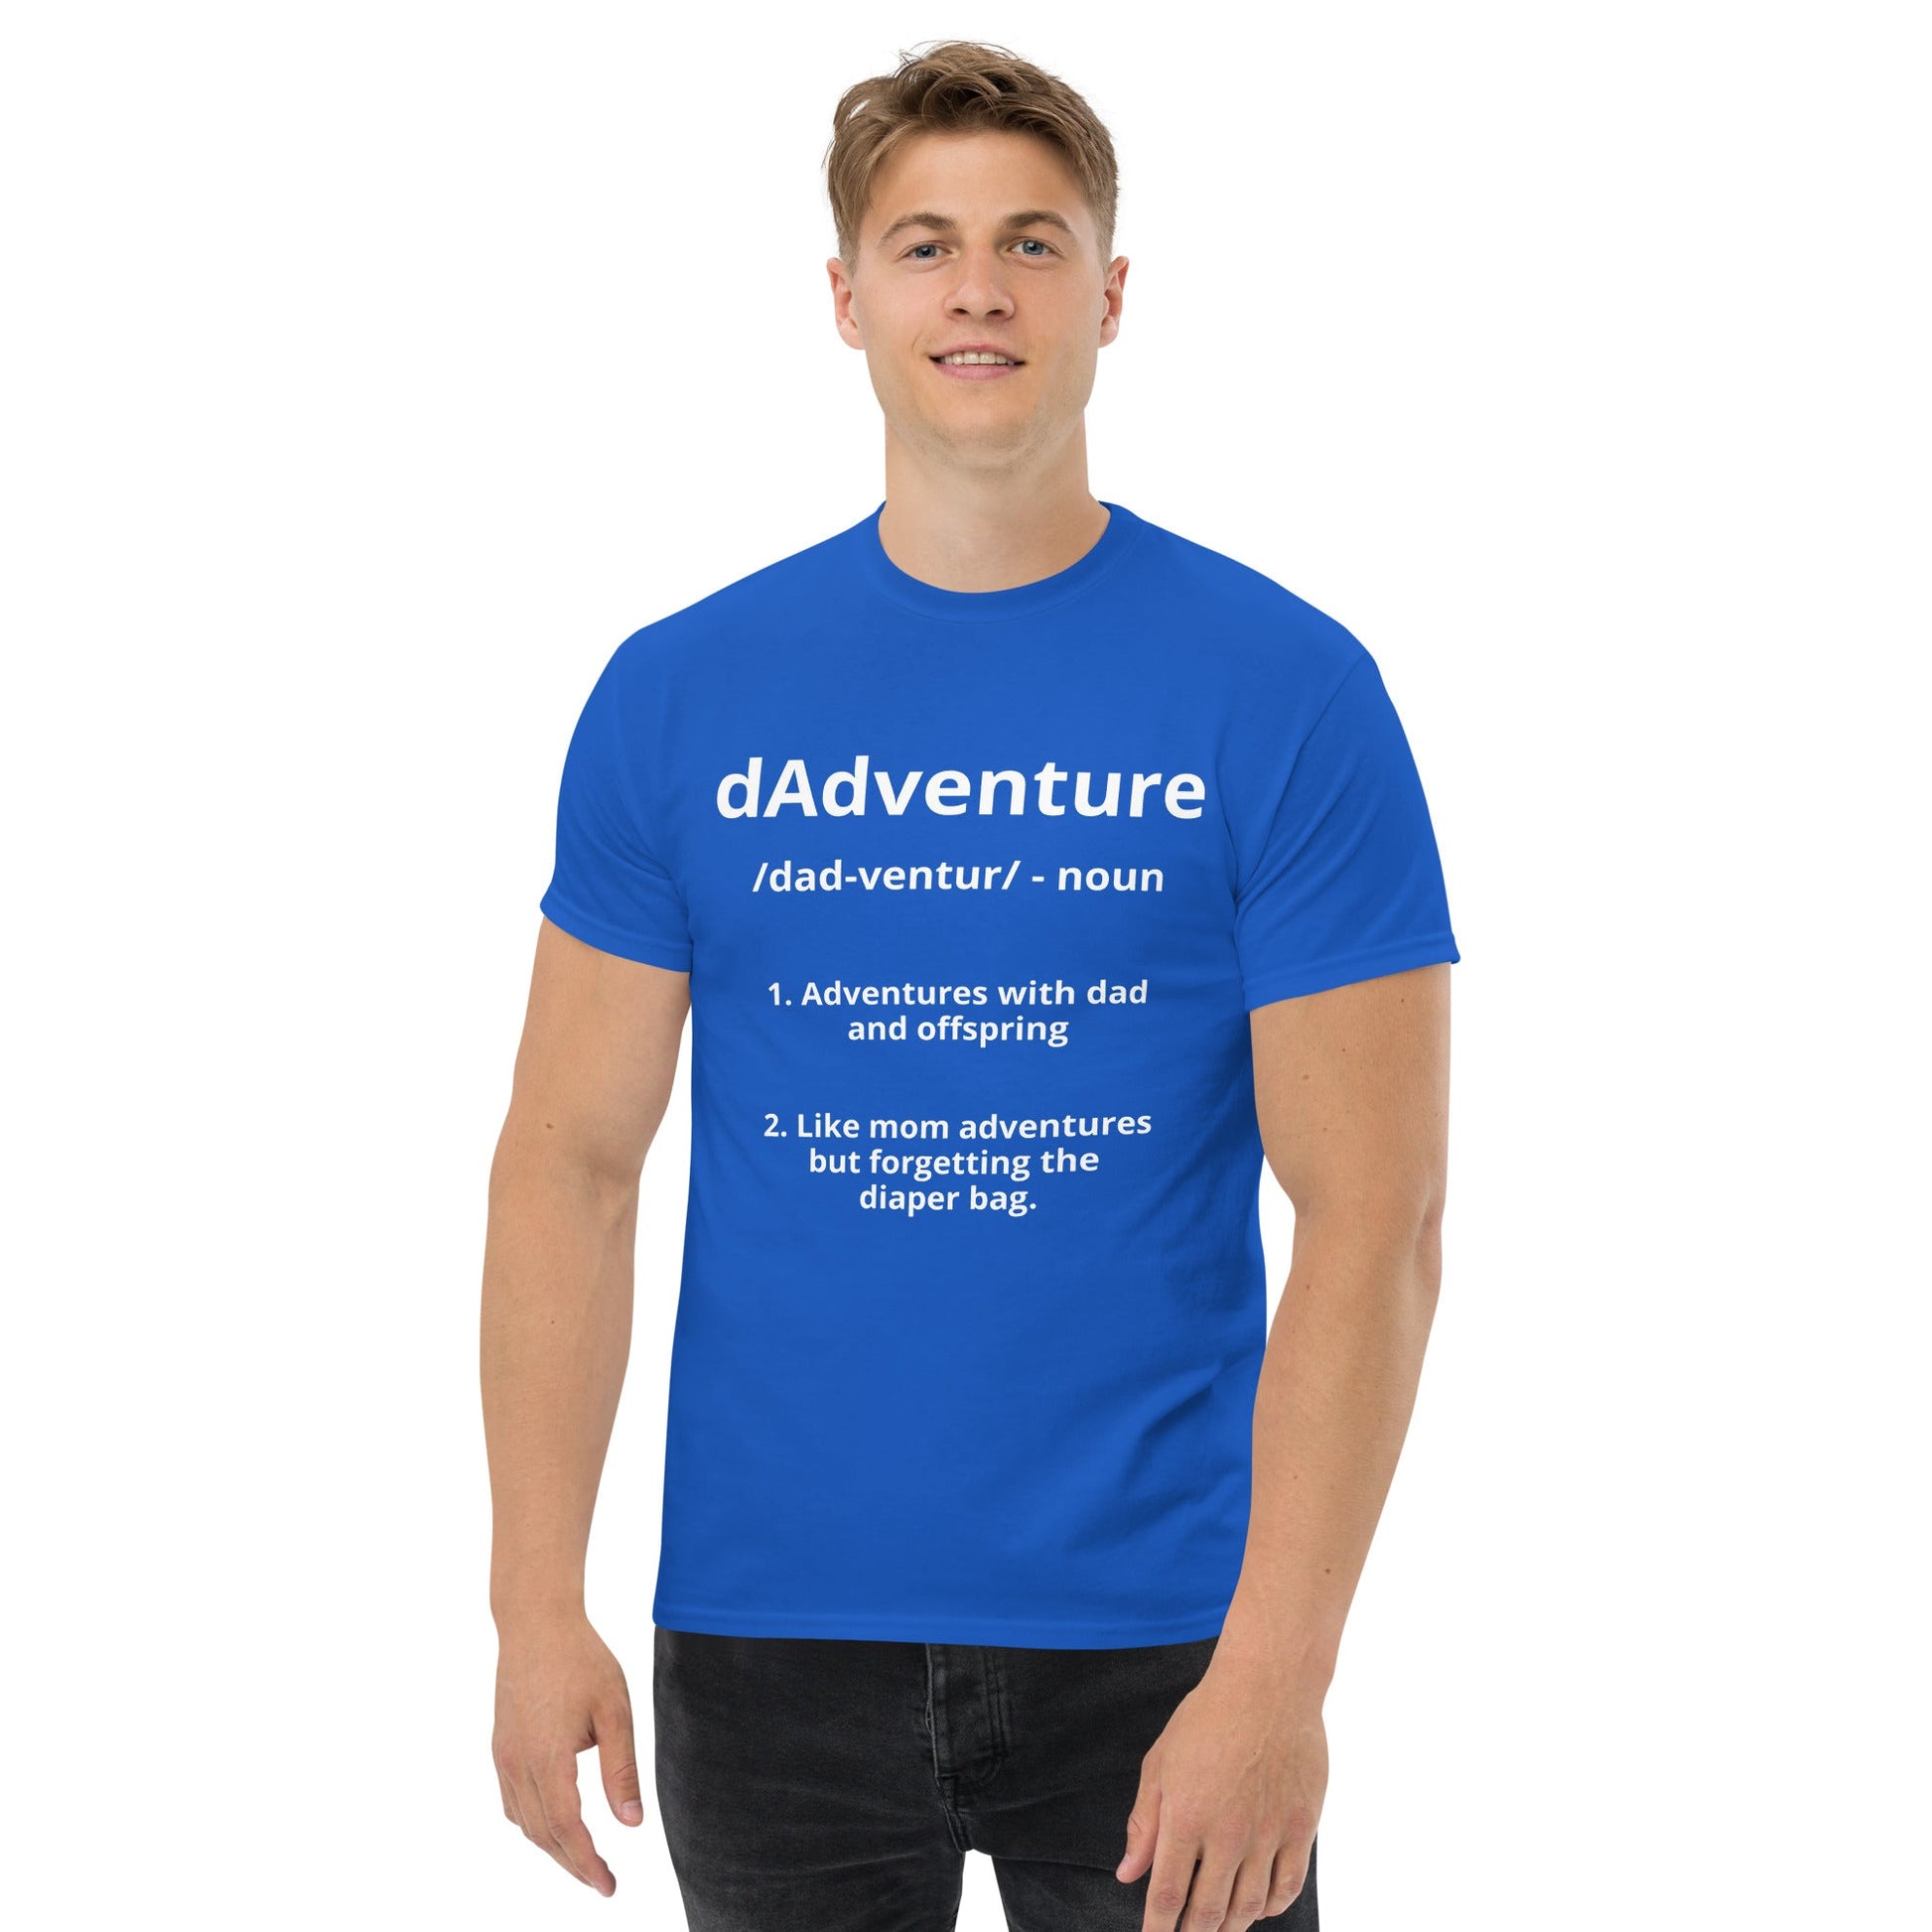 dAdventure Definition T-Shirt - dAdventure